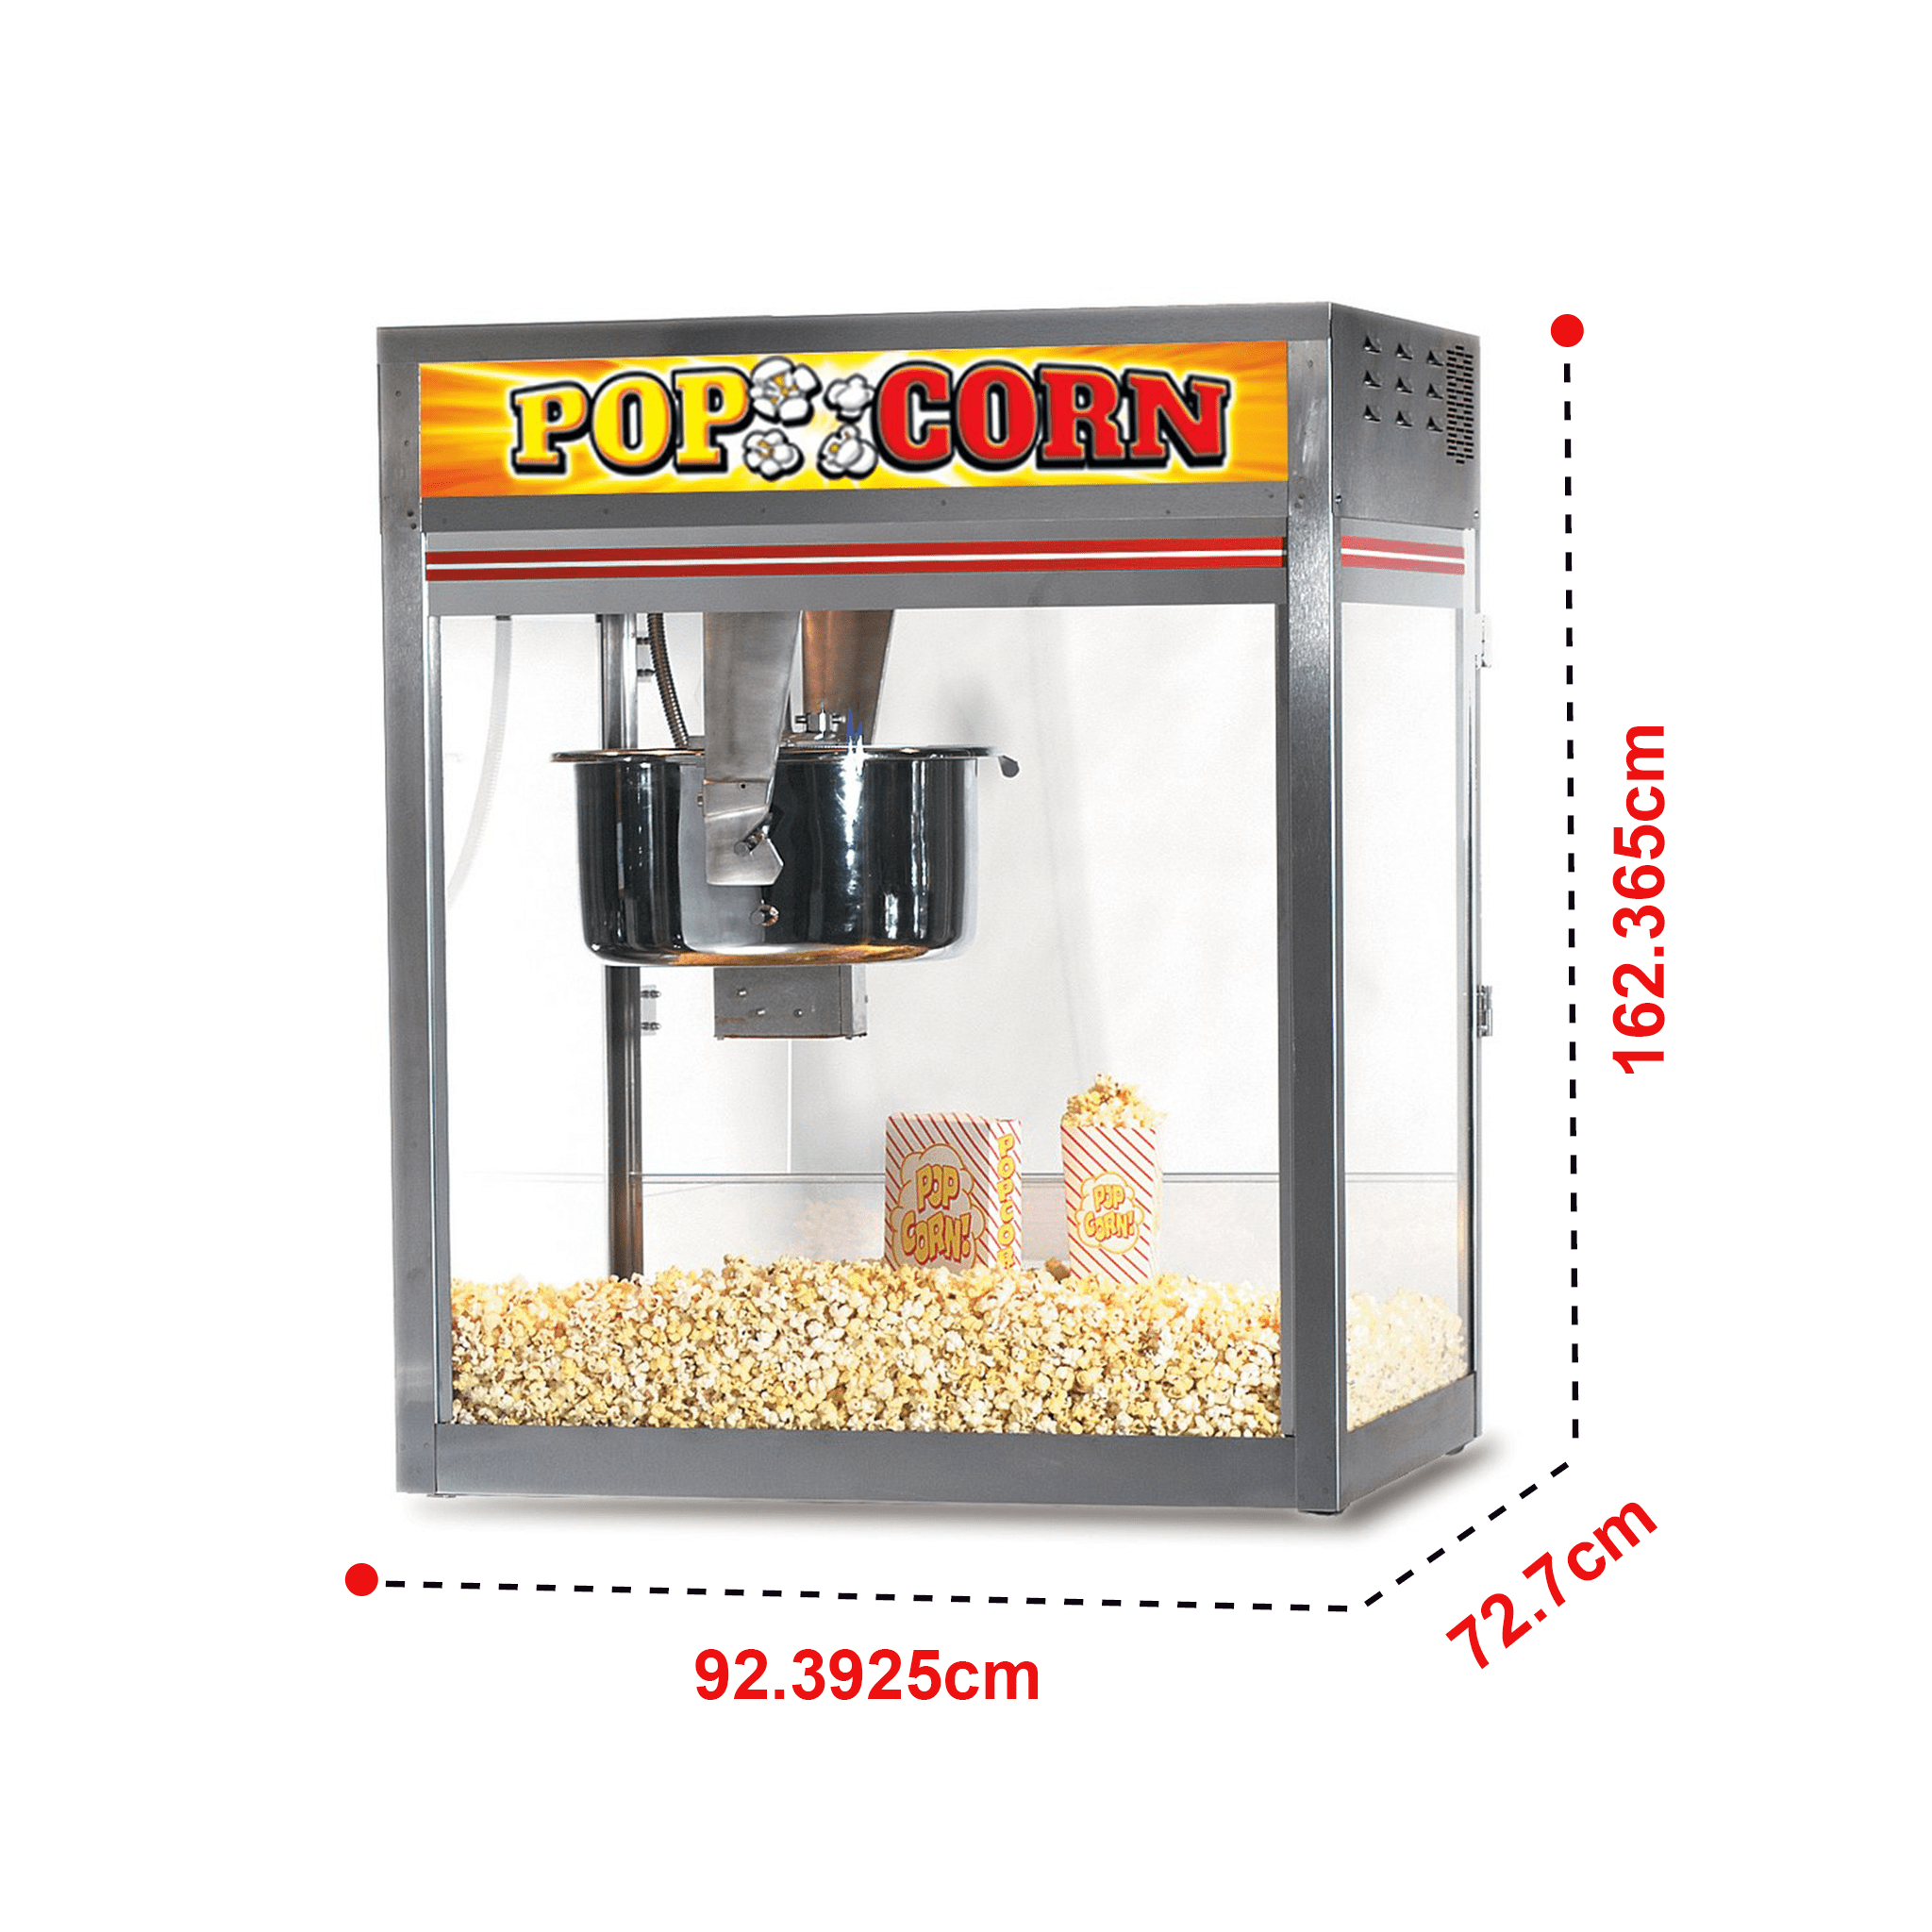 32oz ODYSSEY Popcorn Popper